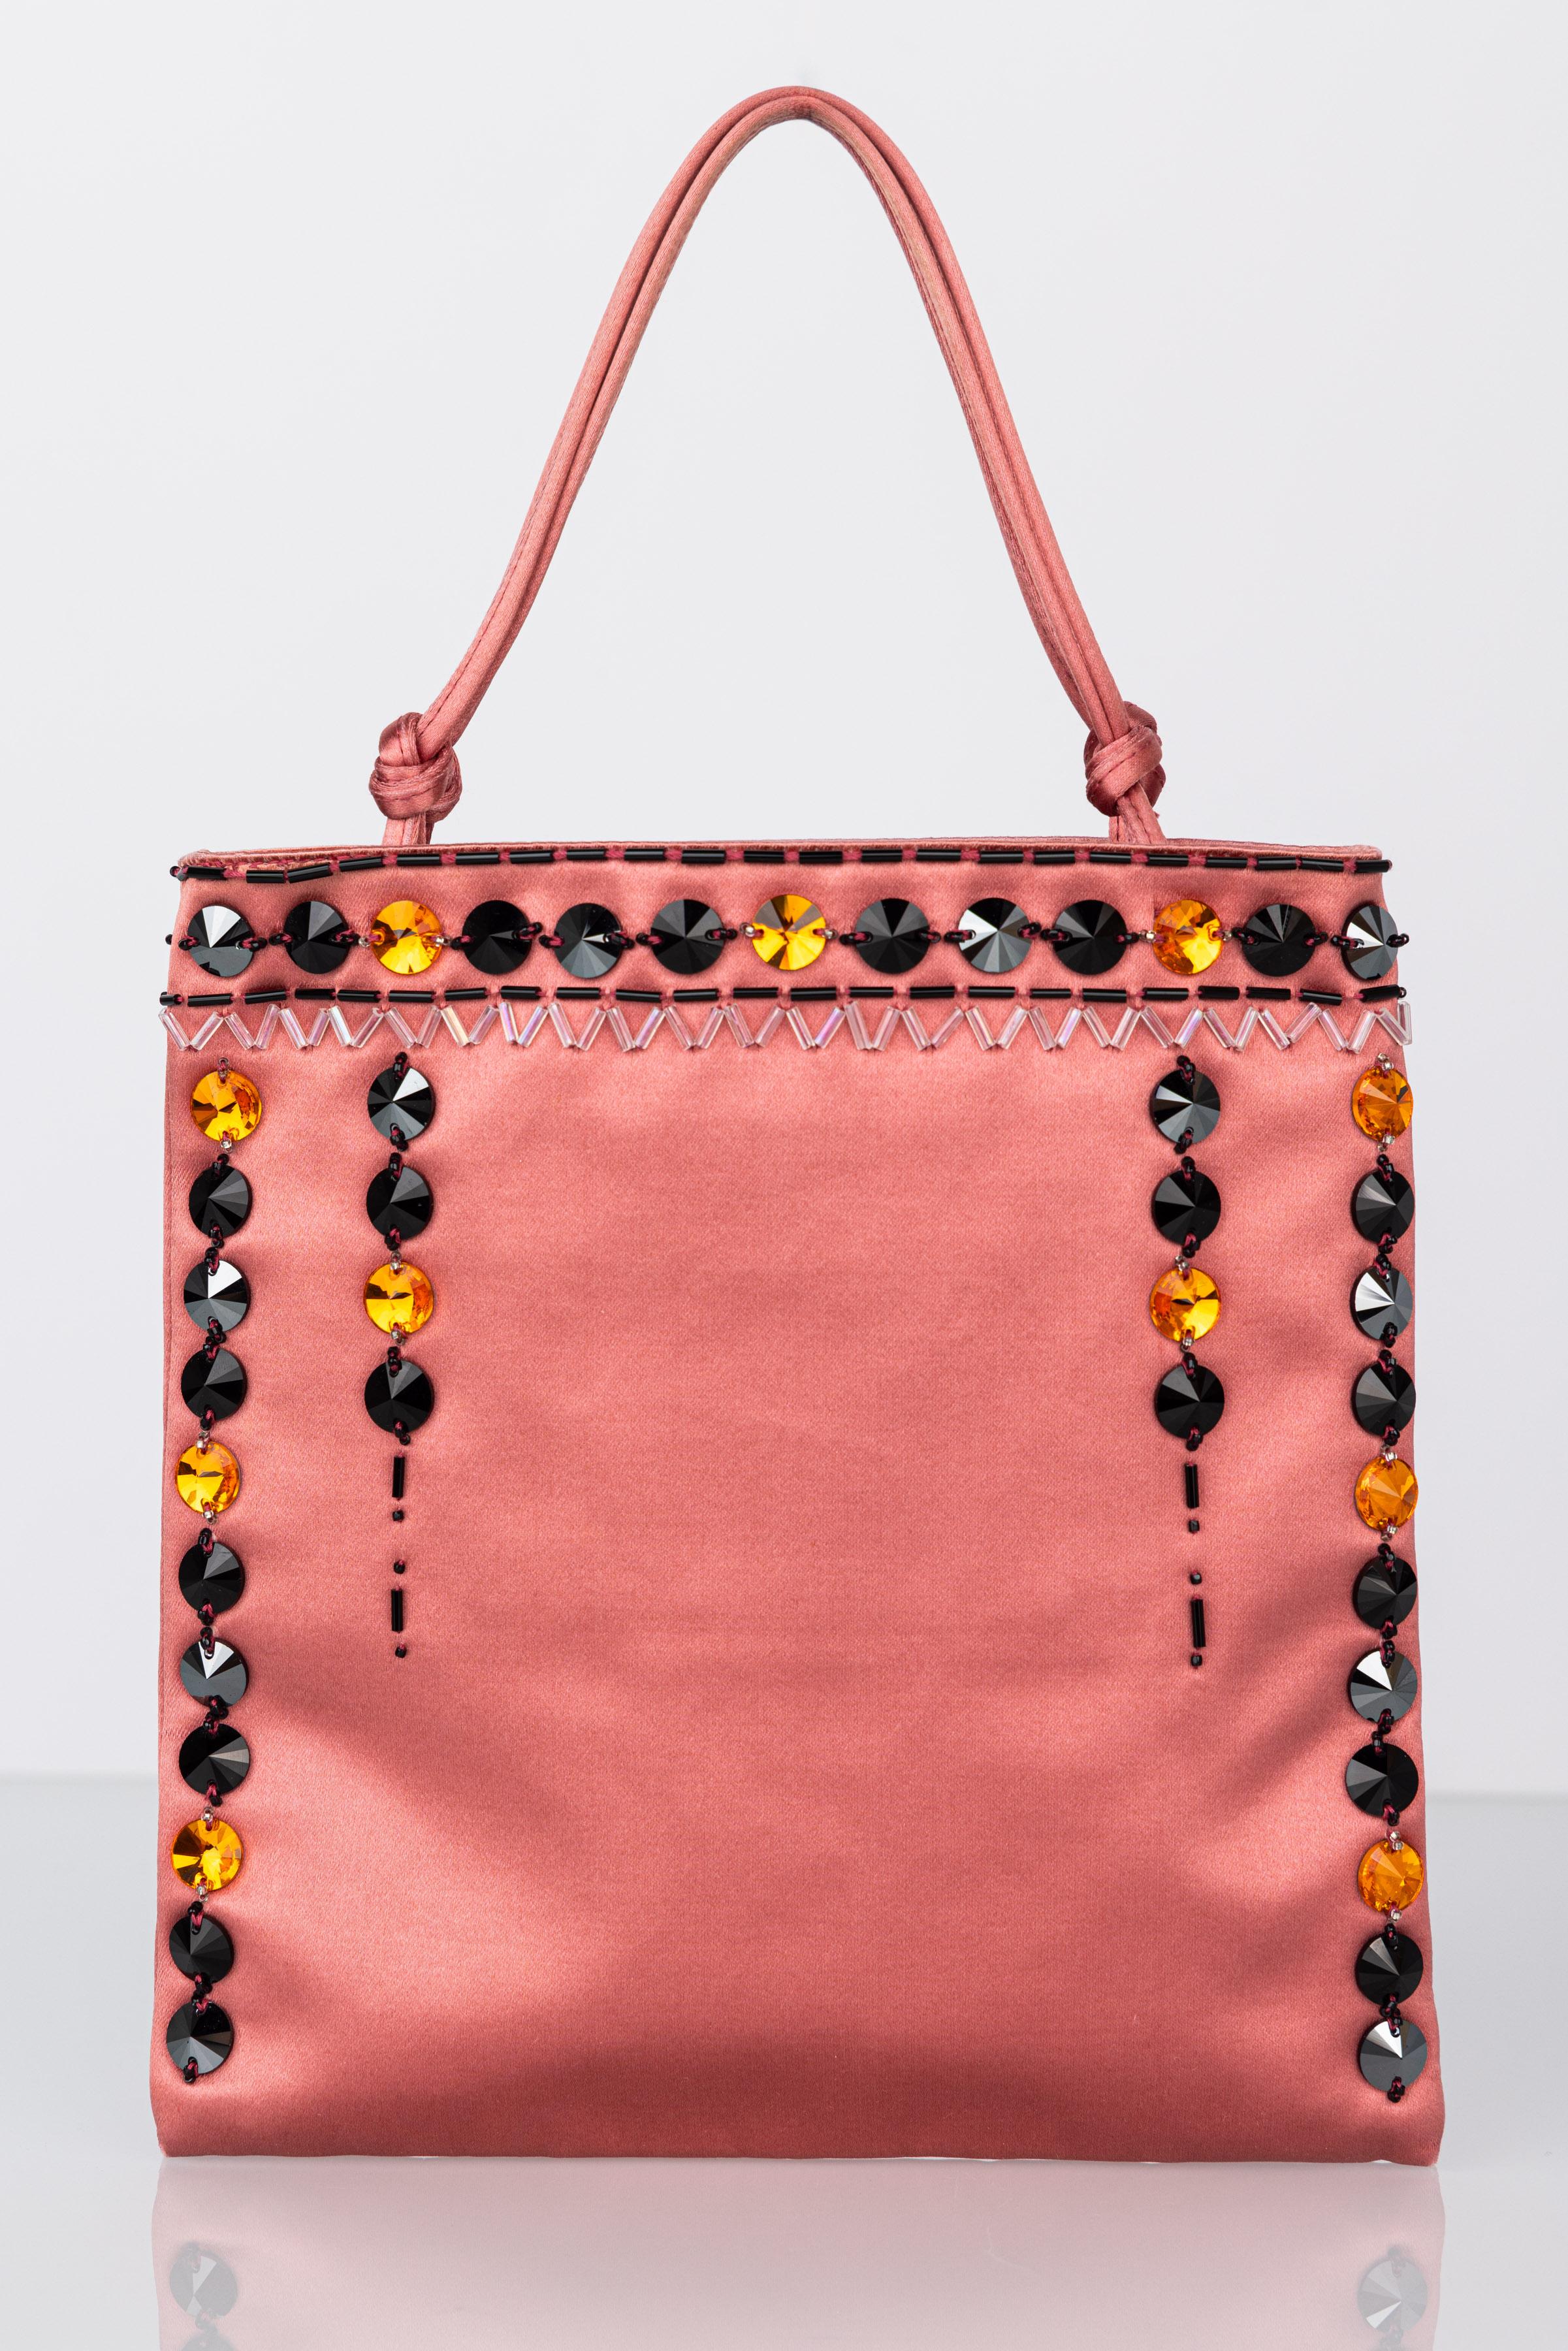 Diese Tasche von Prada ist aus rosafarbener Seide gefertigt und mit gelben, schwarzen und zinnfarbenen Kristallsteinen und Perlen besetzt. Ein geknoteter Henkel zum Tragen am Arm, perfekt für den Tag oder als Abendtasche.

Diese Tasche ist in sehr